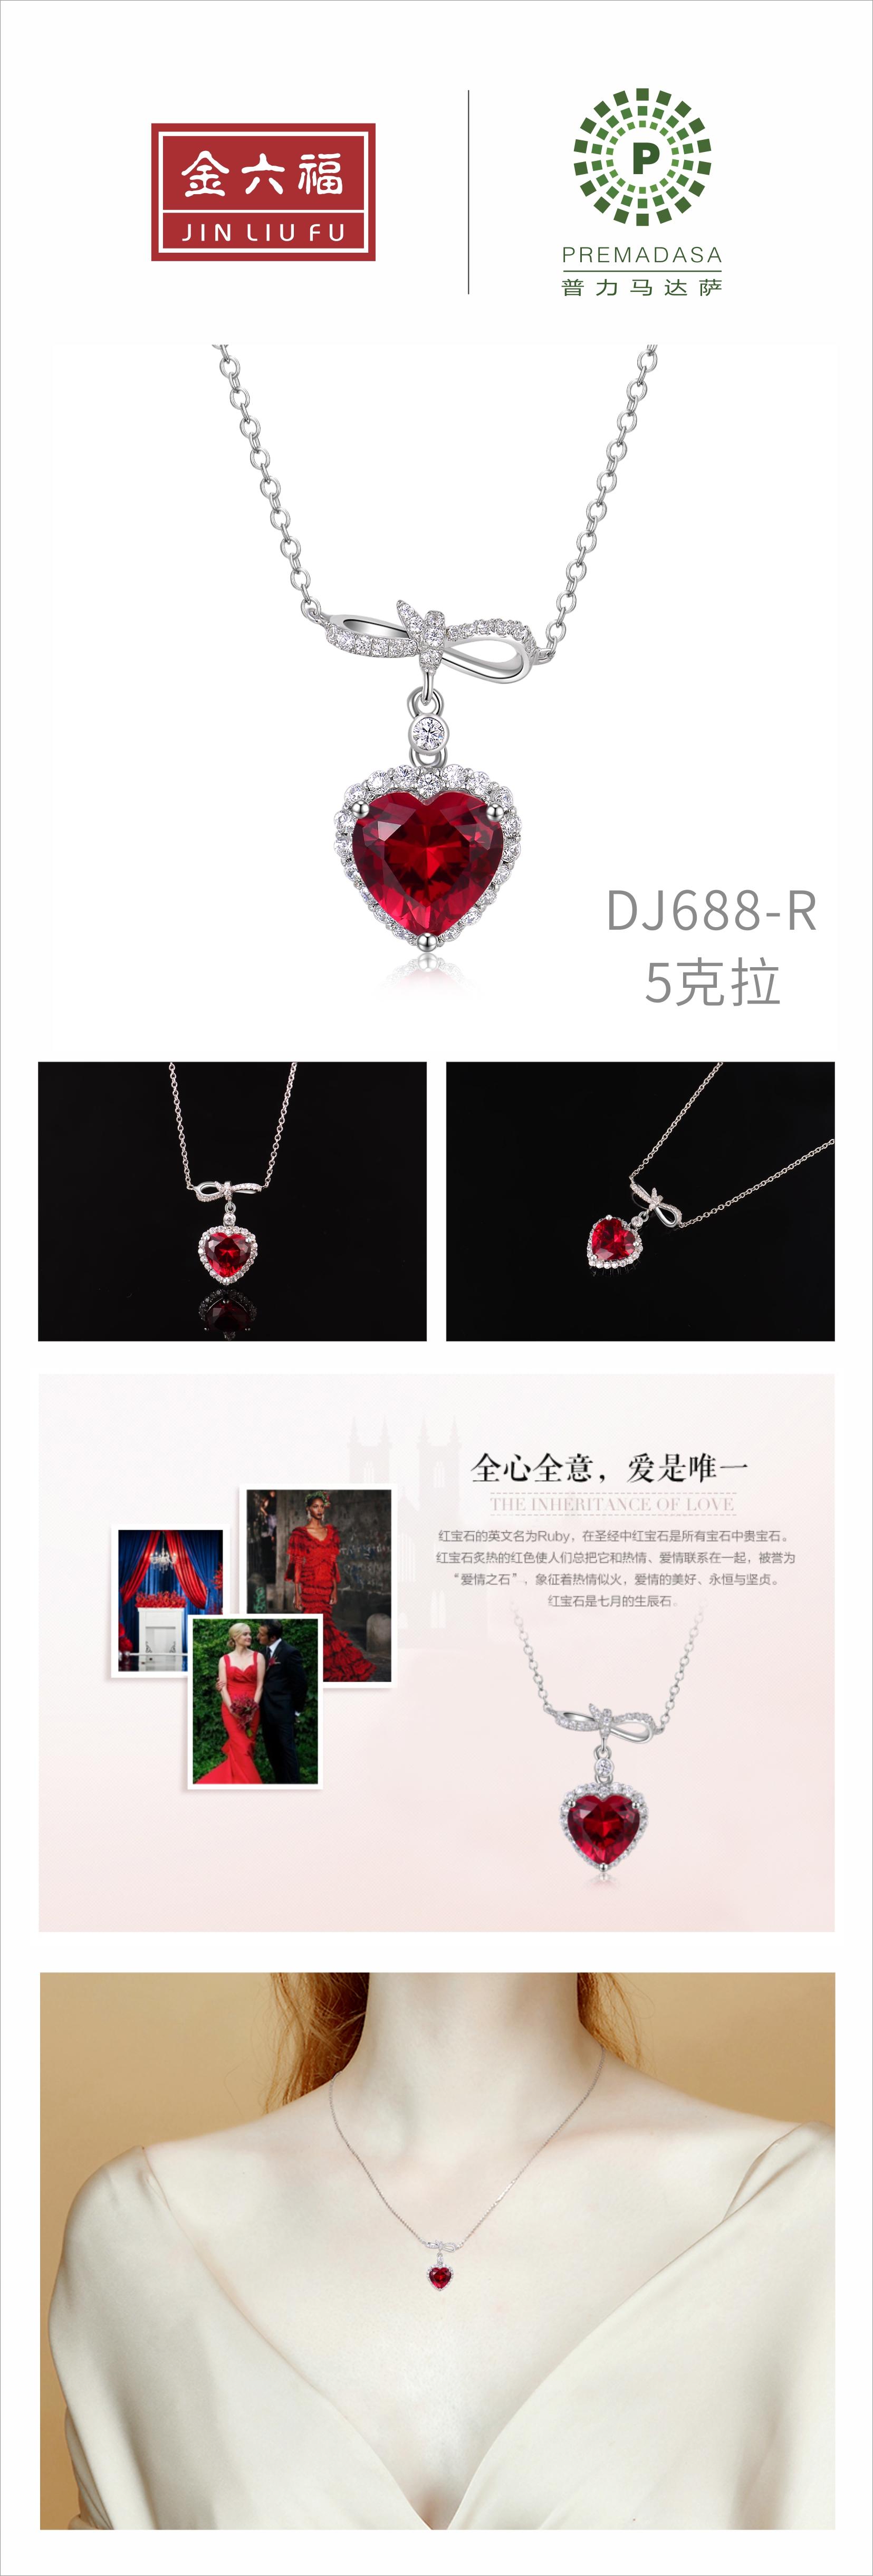 金六福珠宝 DJ688-R 红宝石/5克拉 女士项链